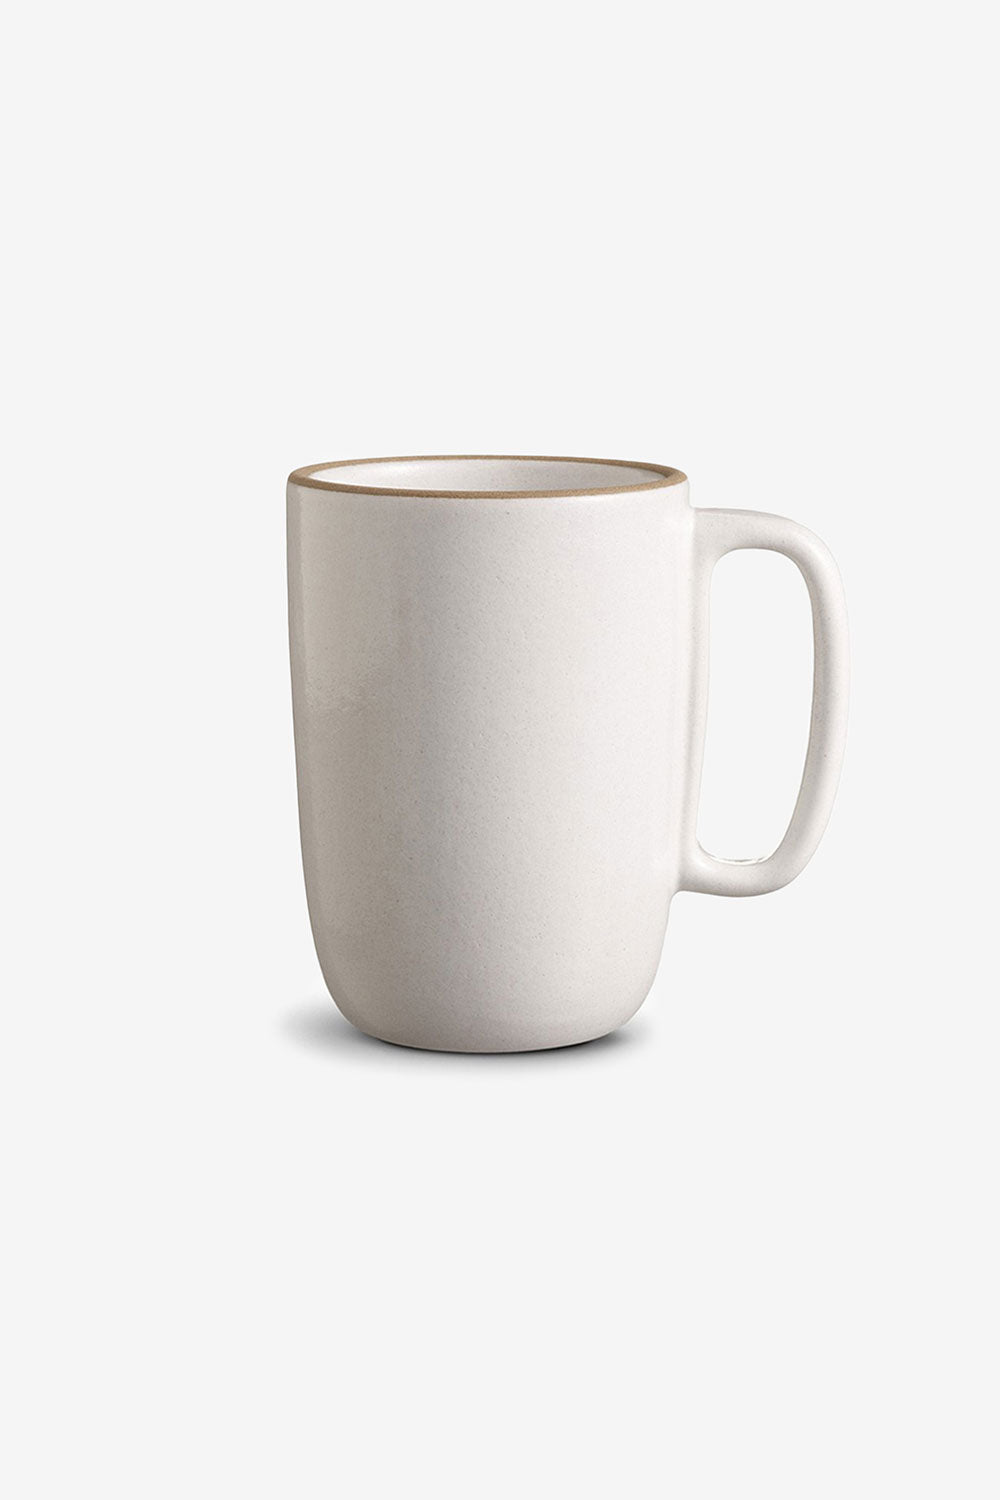 Heath Ceramics Espresso Cup & Saucer